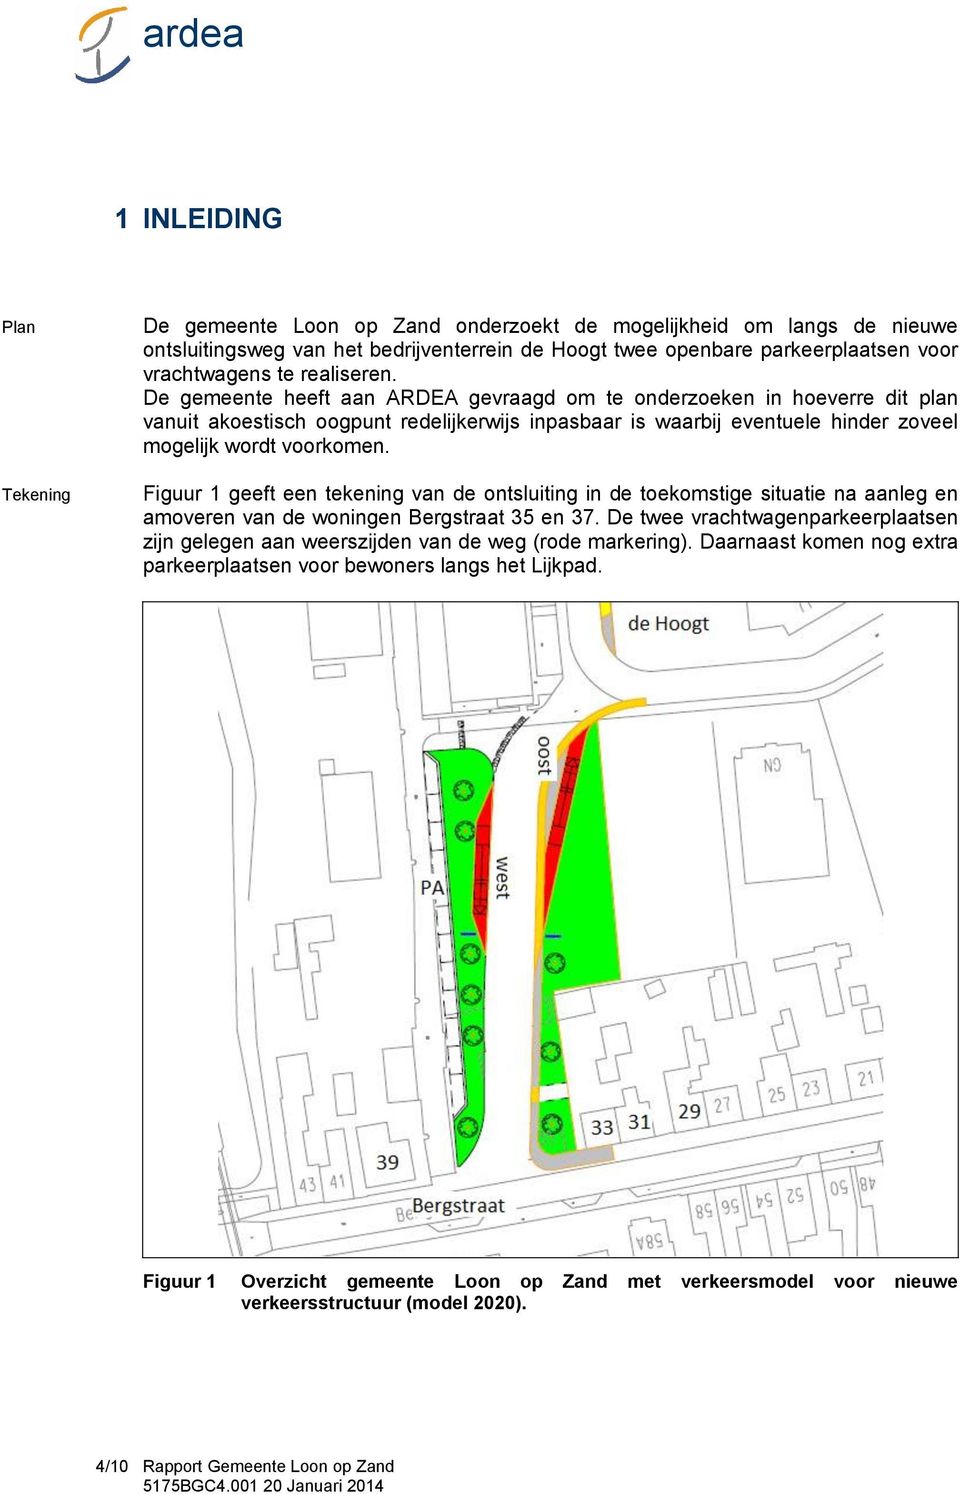 Figuur 1 geeft een tekening van de ontsluiting in de toekomstige situatie na aanleg en amoveren van de woningen Bergstraat 35 en 37.